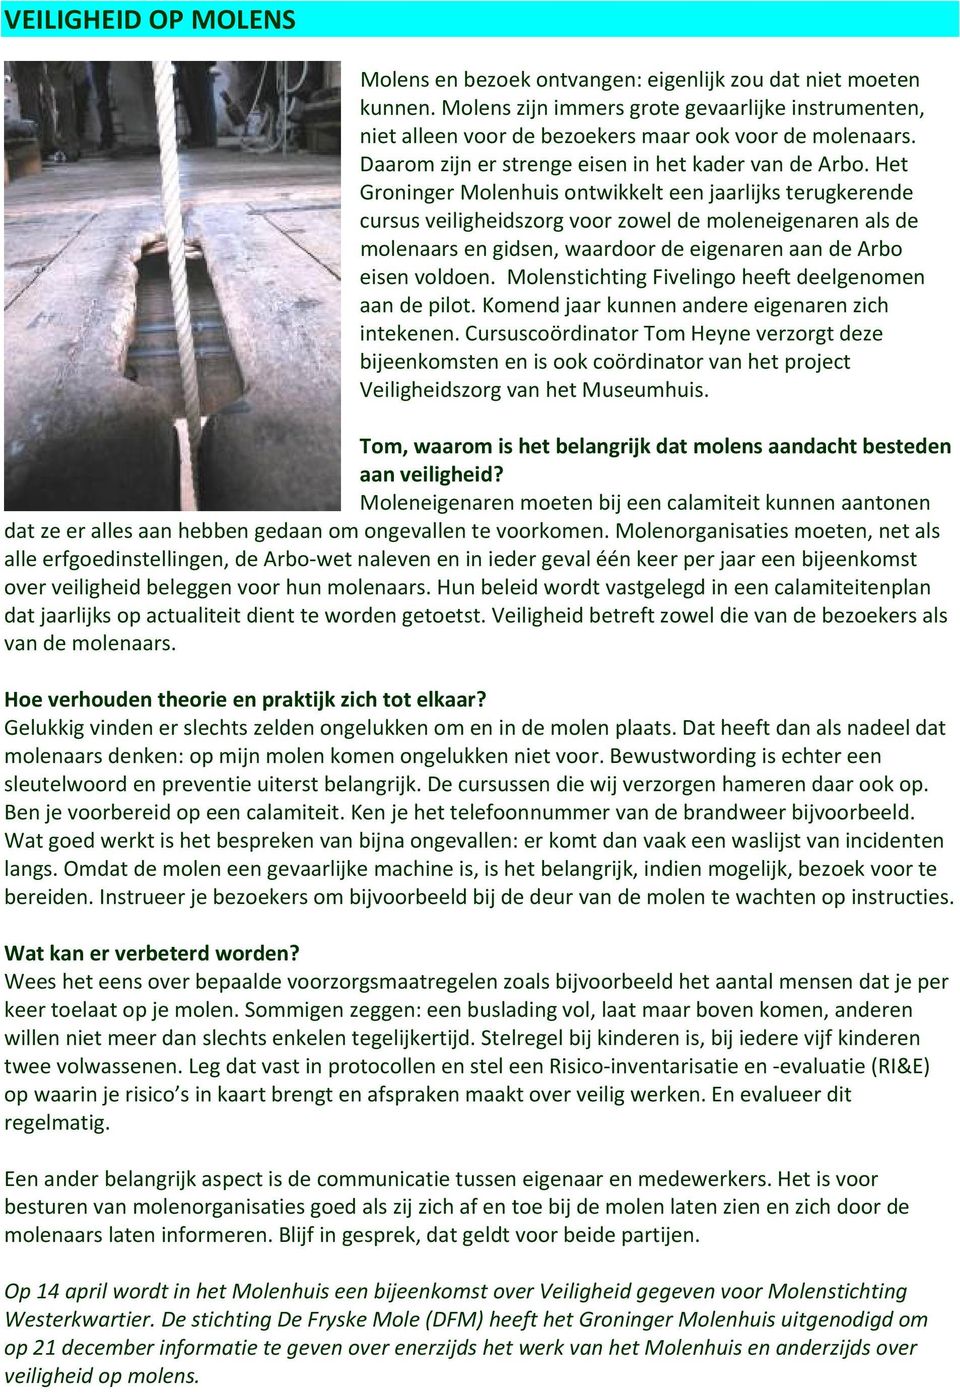 Het Groninger Molenhuis ontwikkelt een jaarlijks terugkerende cursus veiligheidszorg voor zowel de moleneigenaren als de molenaars en gidsen, waardoor de eigenaren aan de Arbo eisen voldoen.